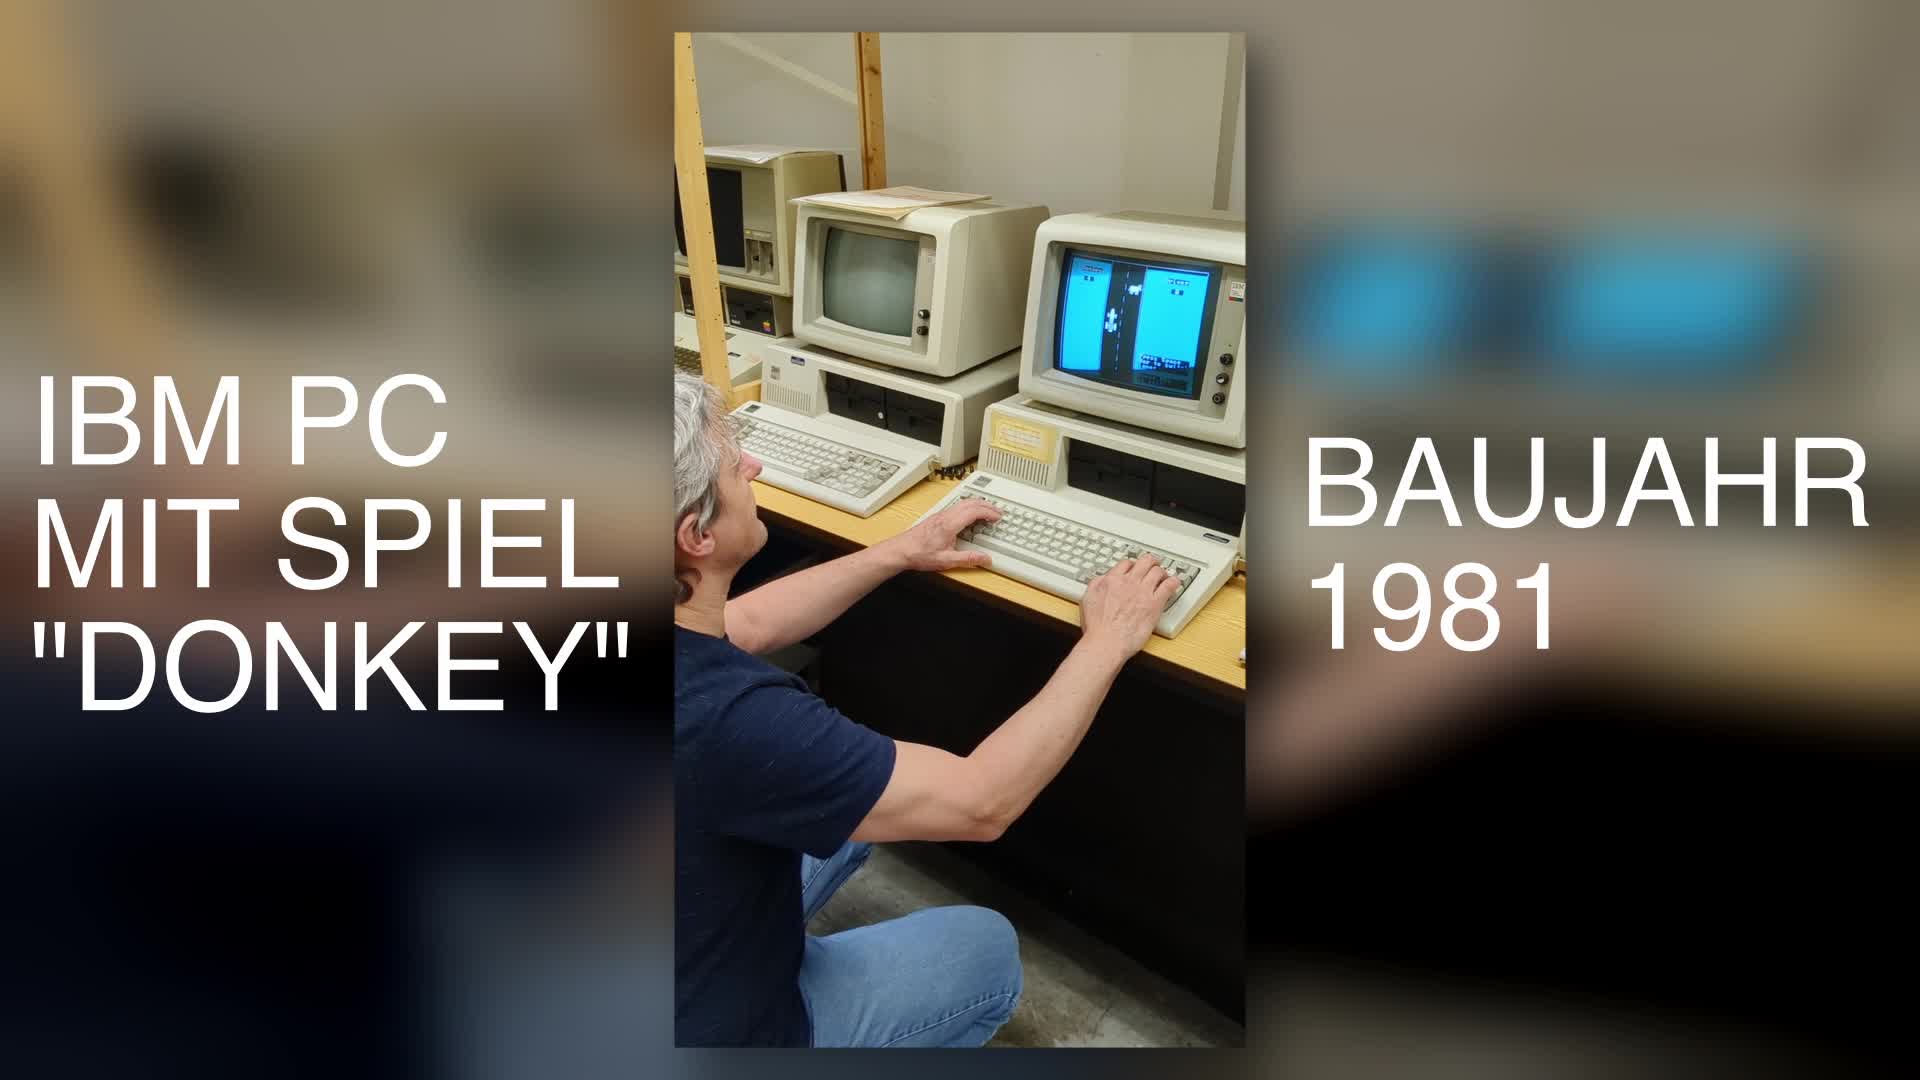 IBM PC mit Spiel 